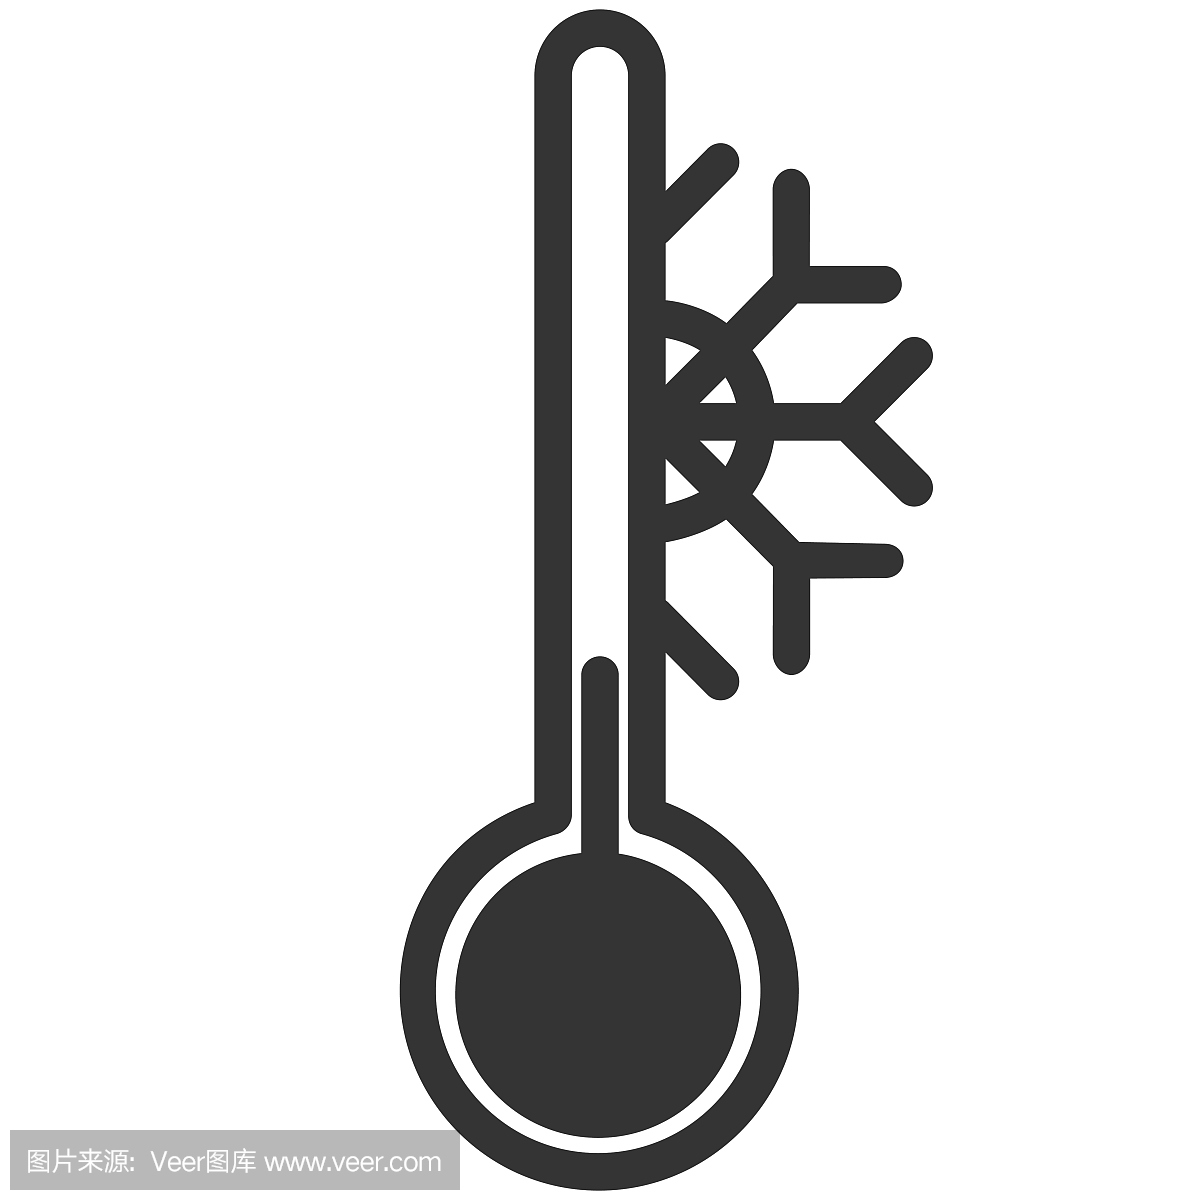 华氏温标,华氏温度计,华氏温度计的,华氏温度